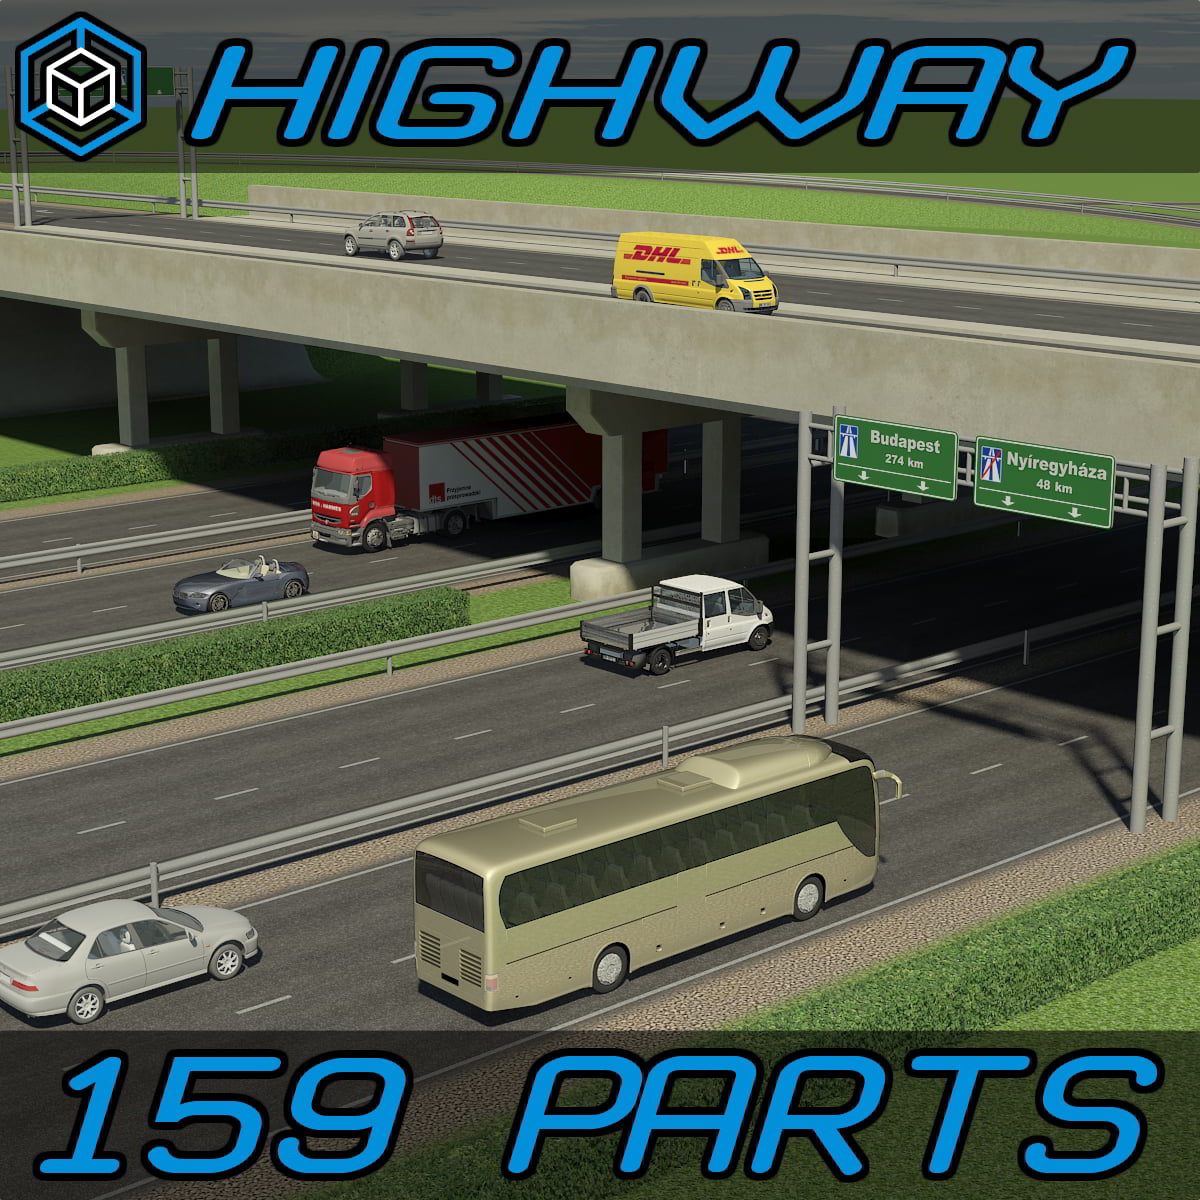 Turbosquid - Highway Elements Packby Univerpix Studio free download